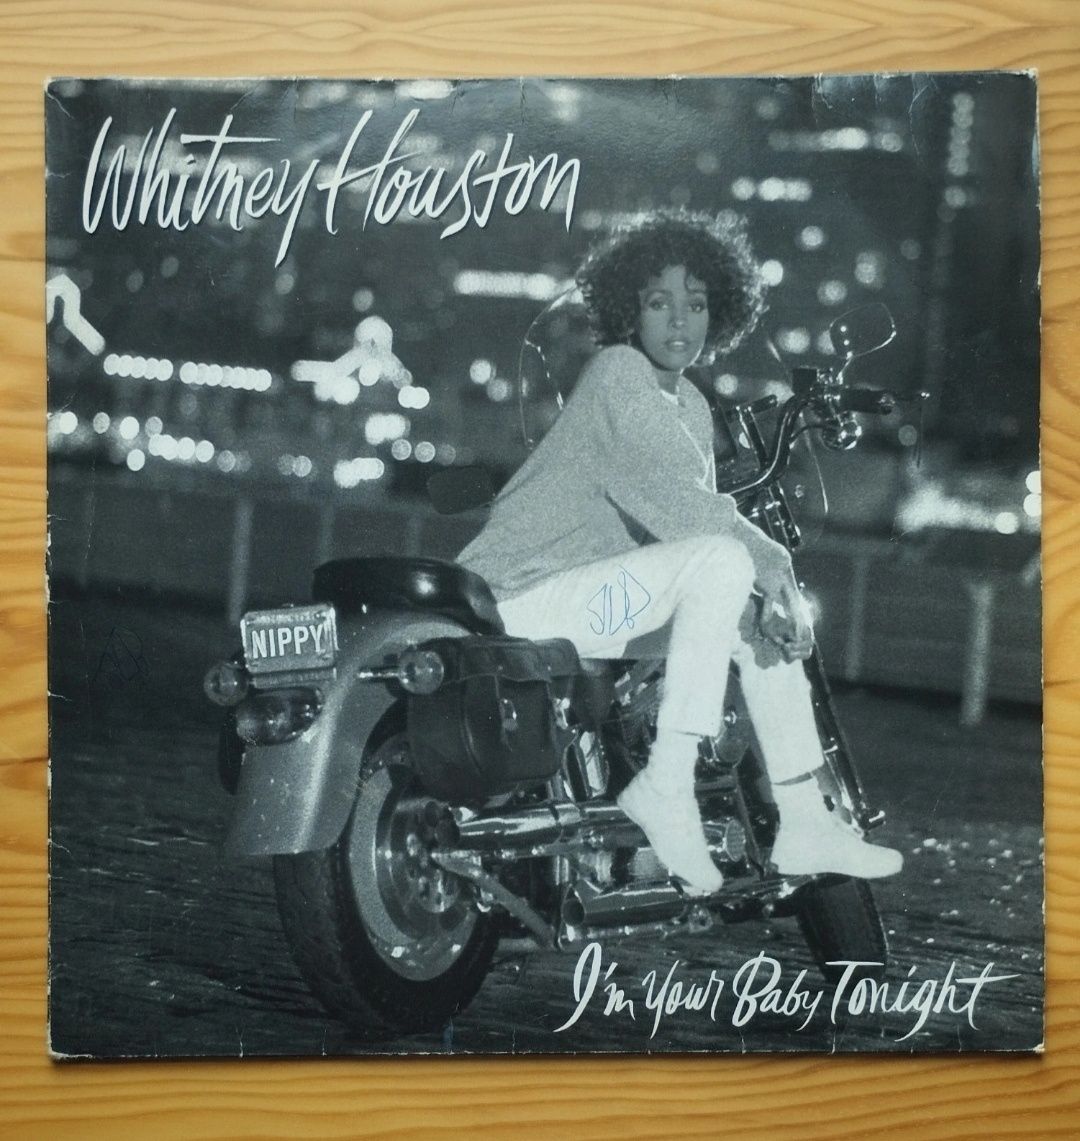 I'm Your Baby Tonight vinyl (1990) - Whitney Houston